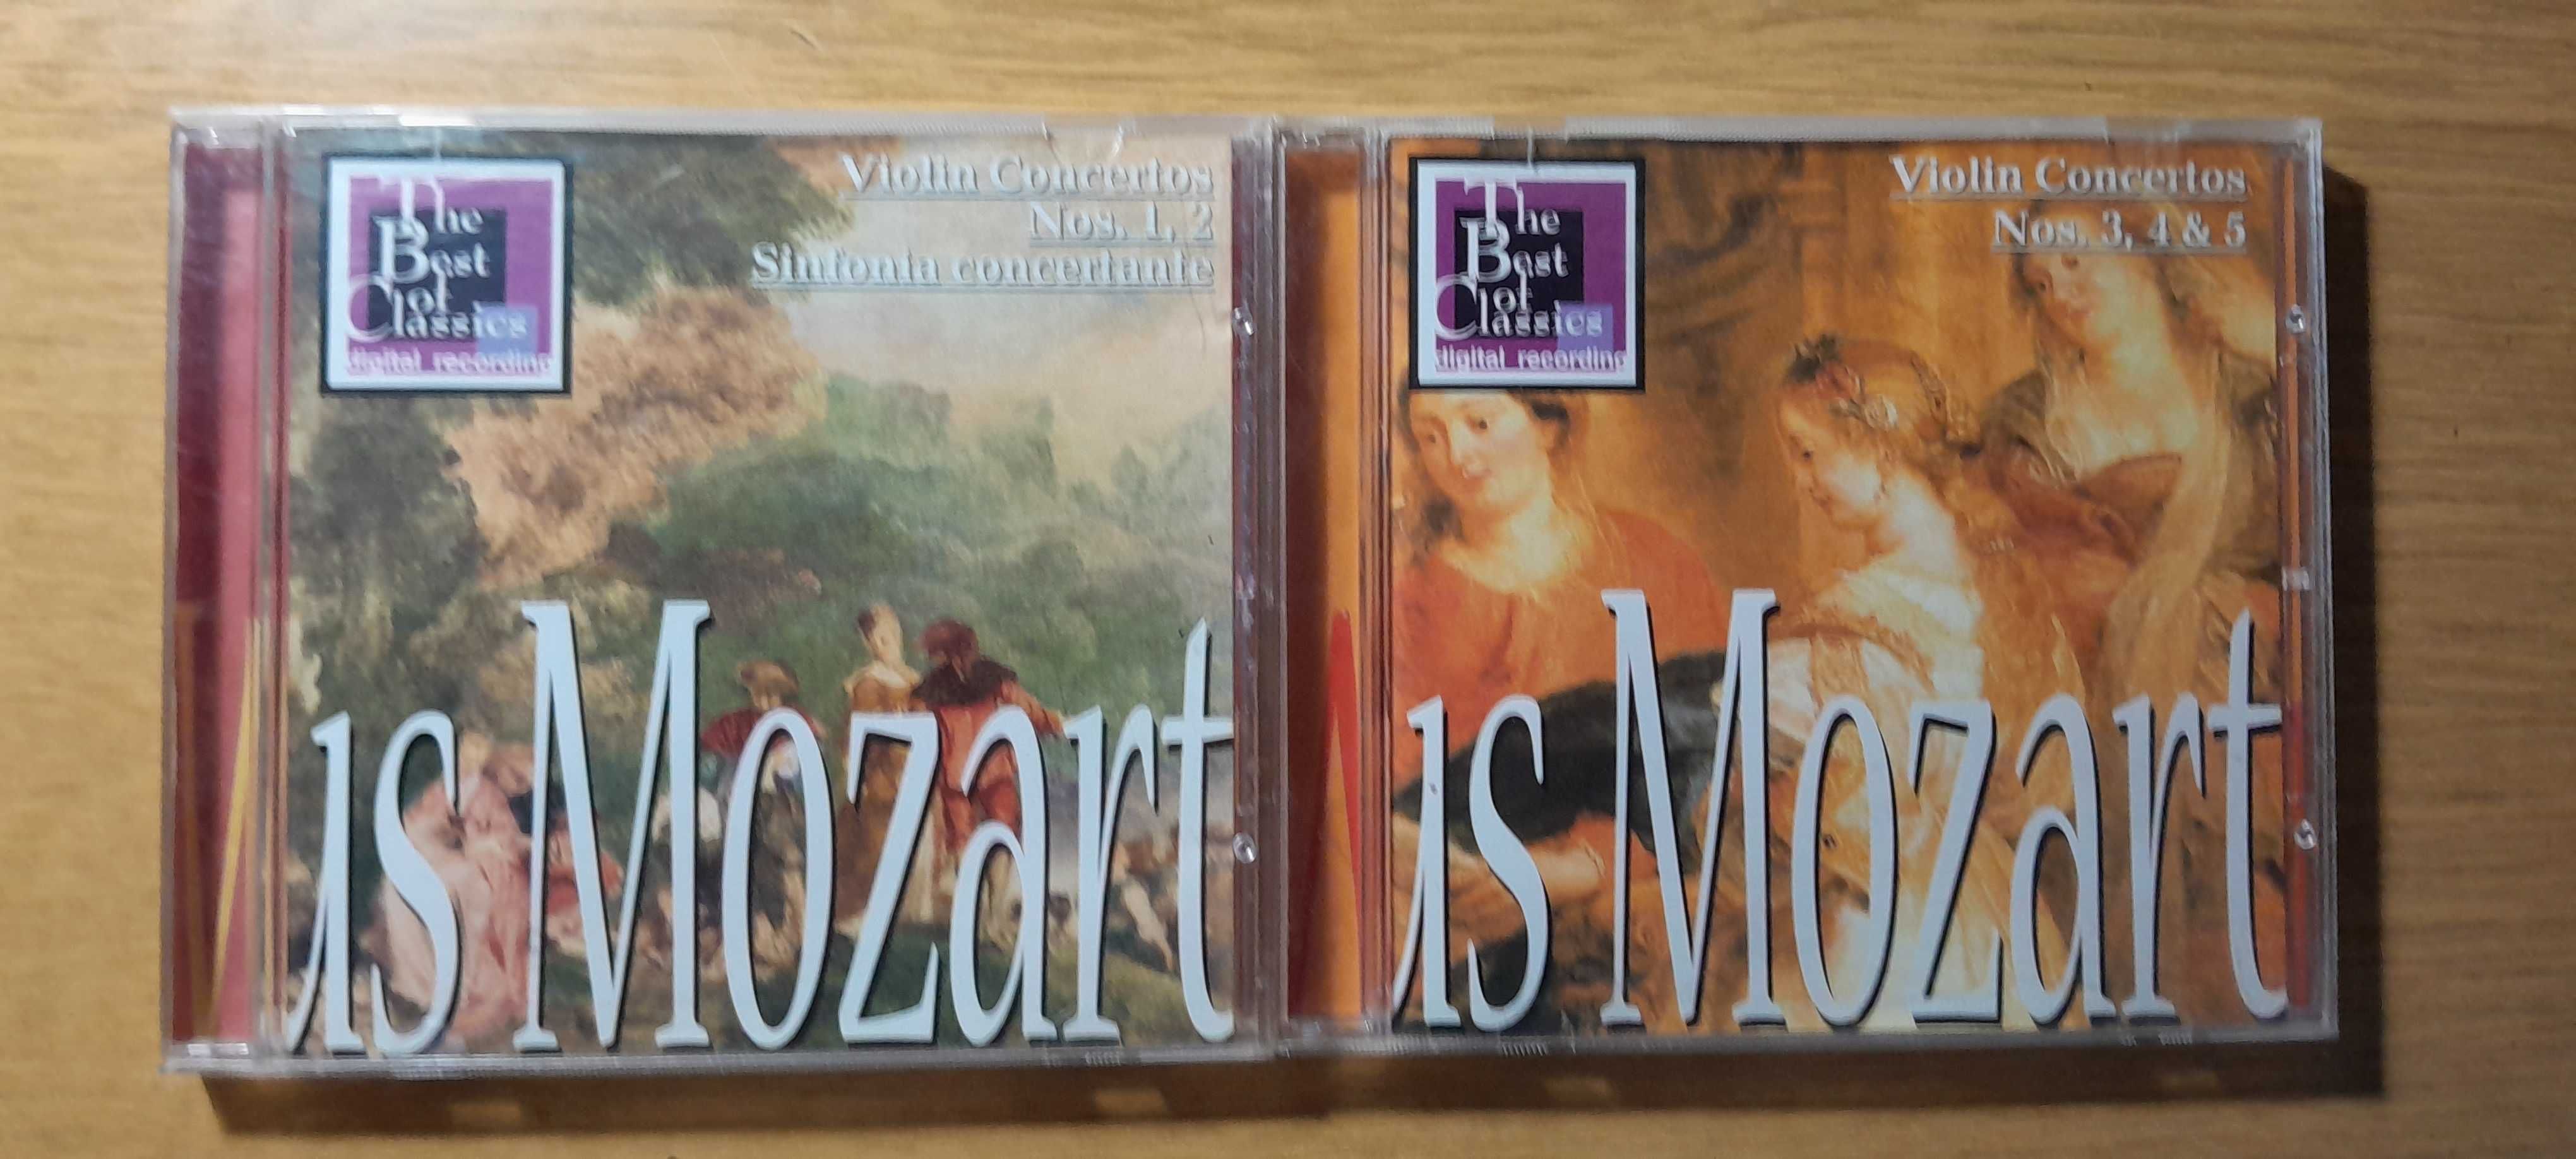 В.А.Моцарт "Концерты для скрипки №1, 2. №3,4,5". "Шедевры" CD-диски. .